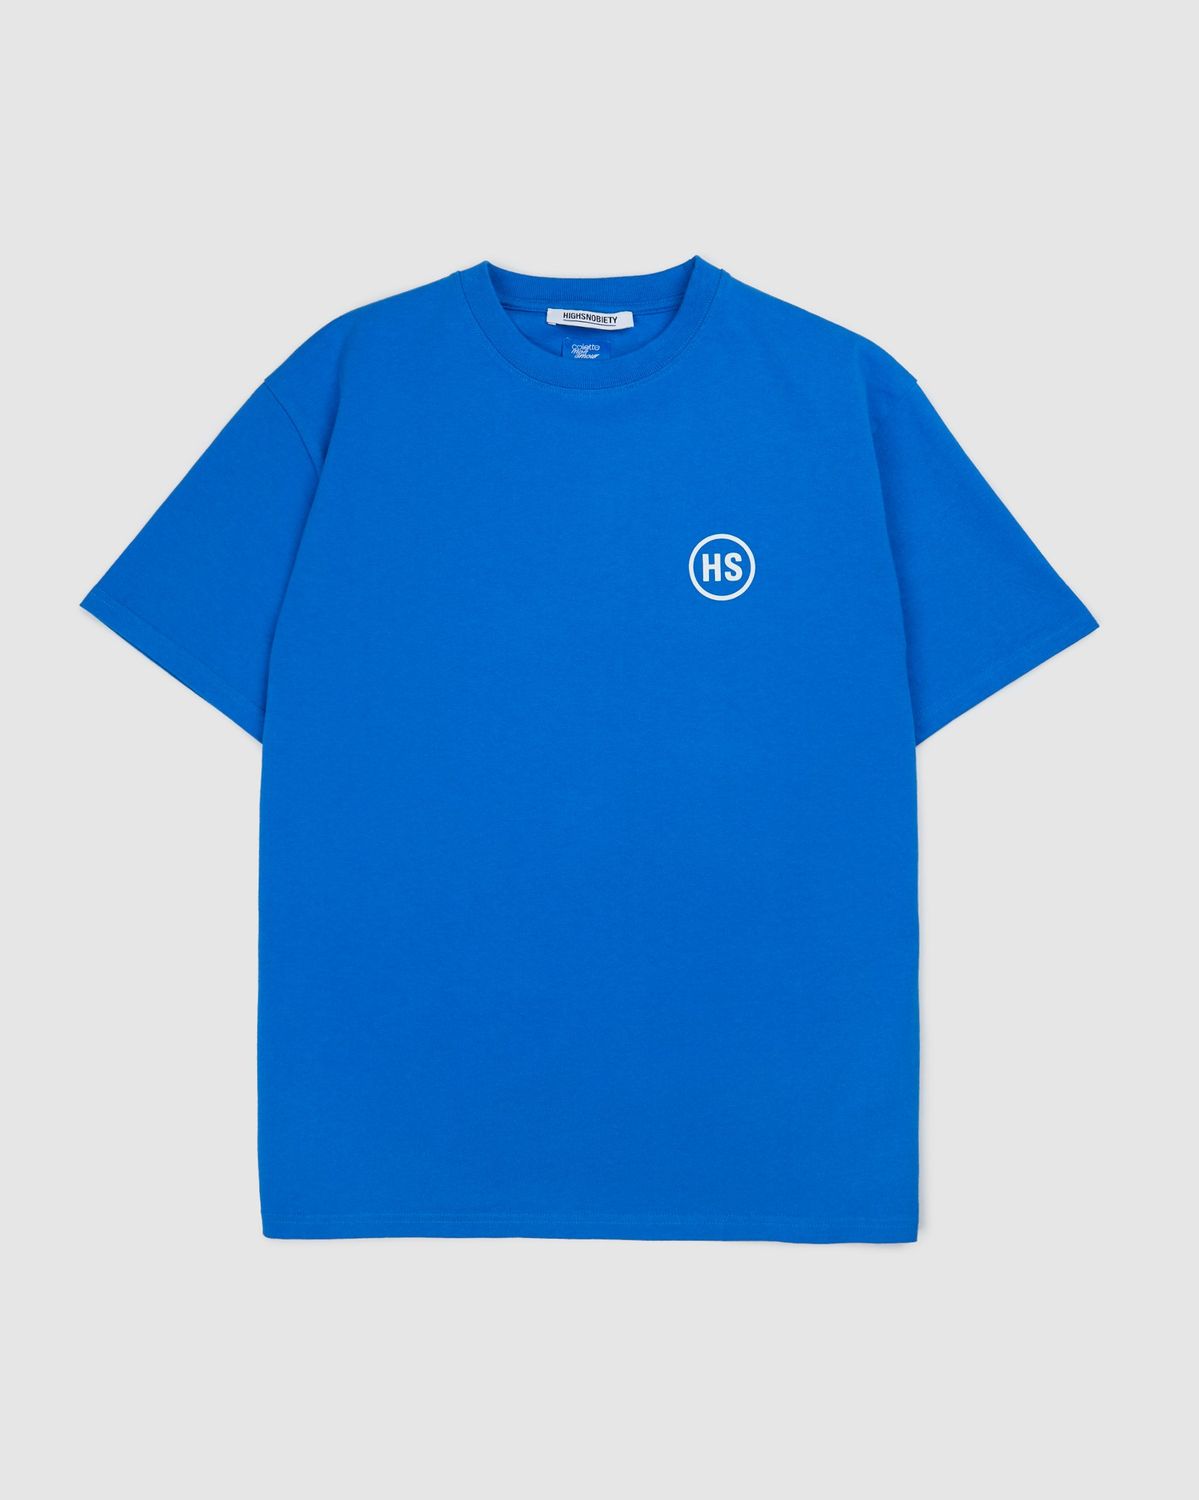 Colette Mon Amour – HS Dots T-Shirt Blue - T-shirts - Blue - Image 2